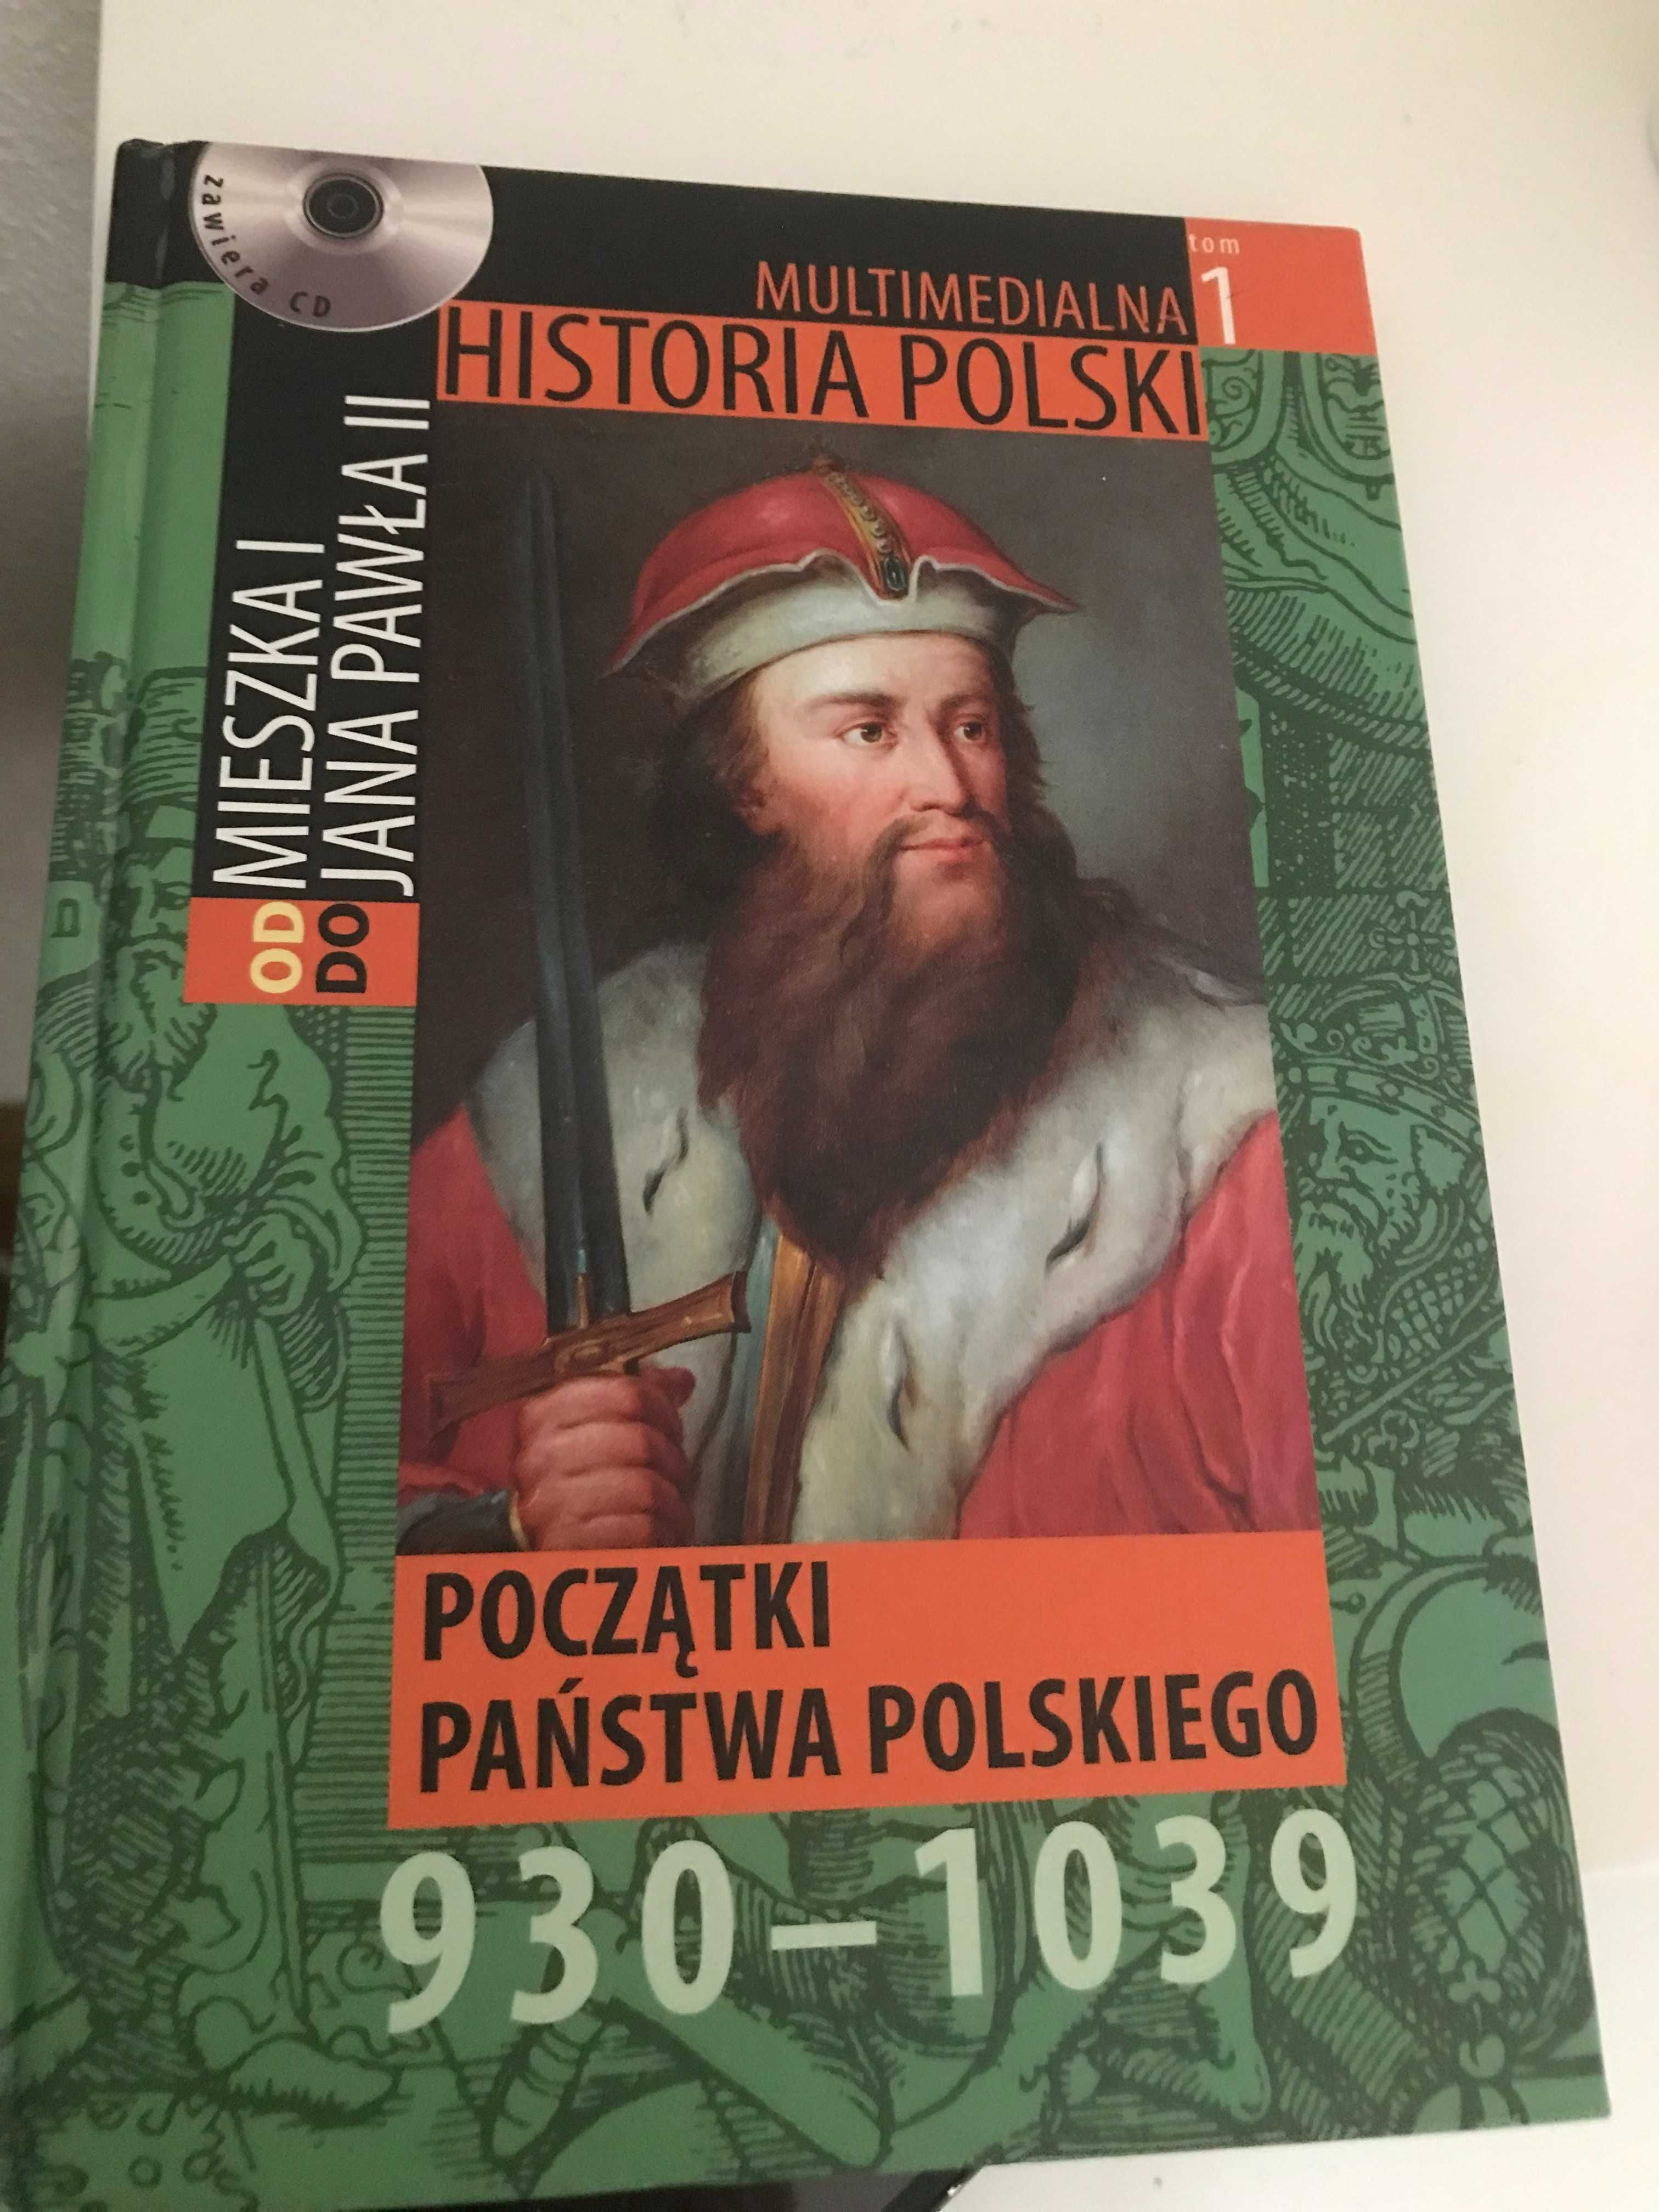 Multimedialna Historia Polski" tom 1, Początki państwa polskiego